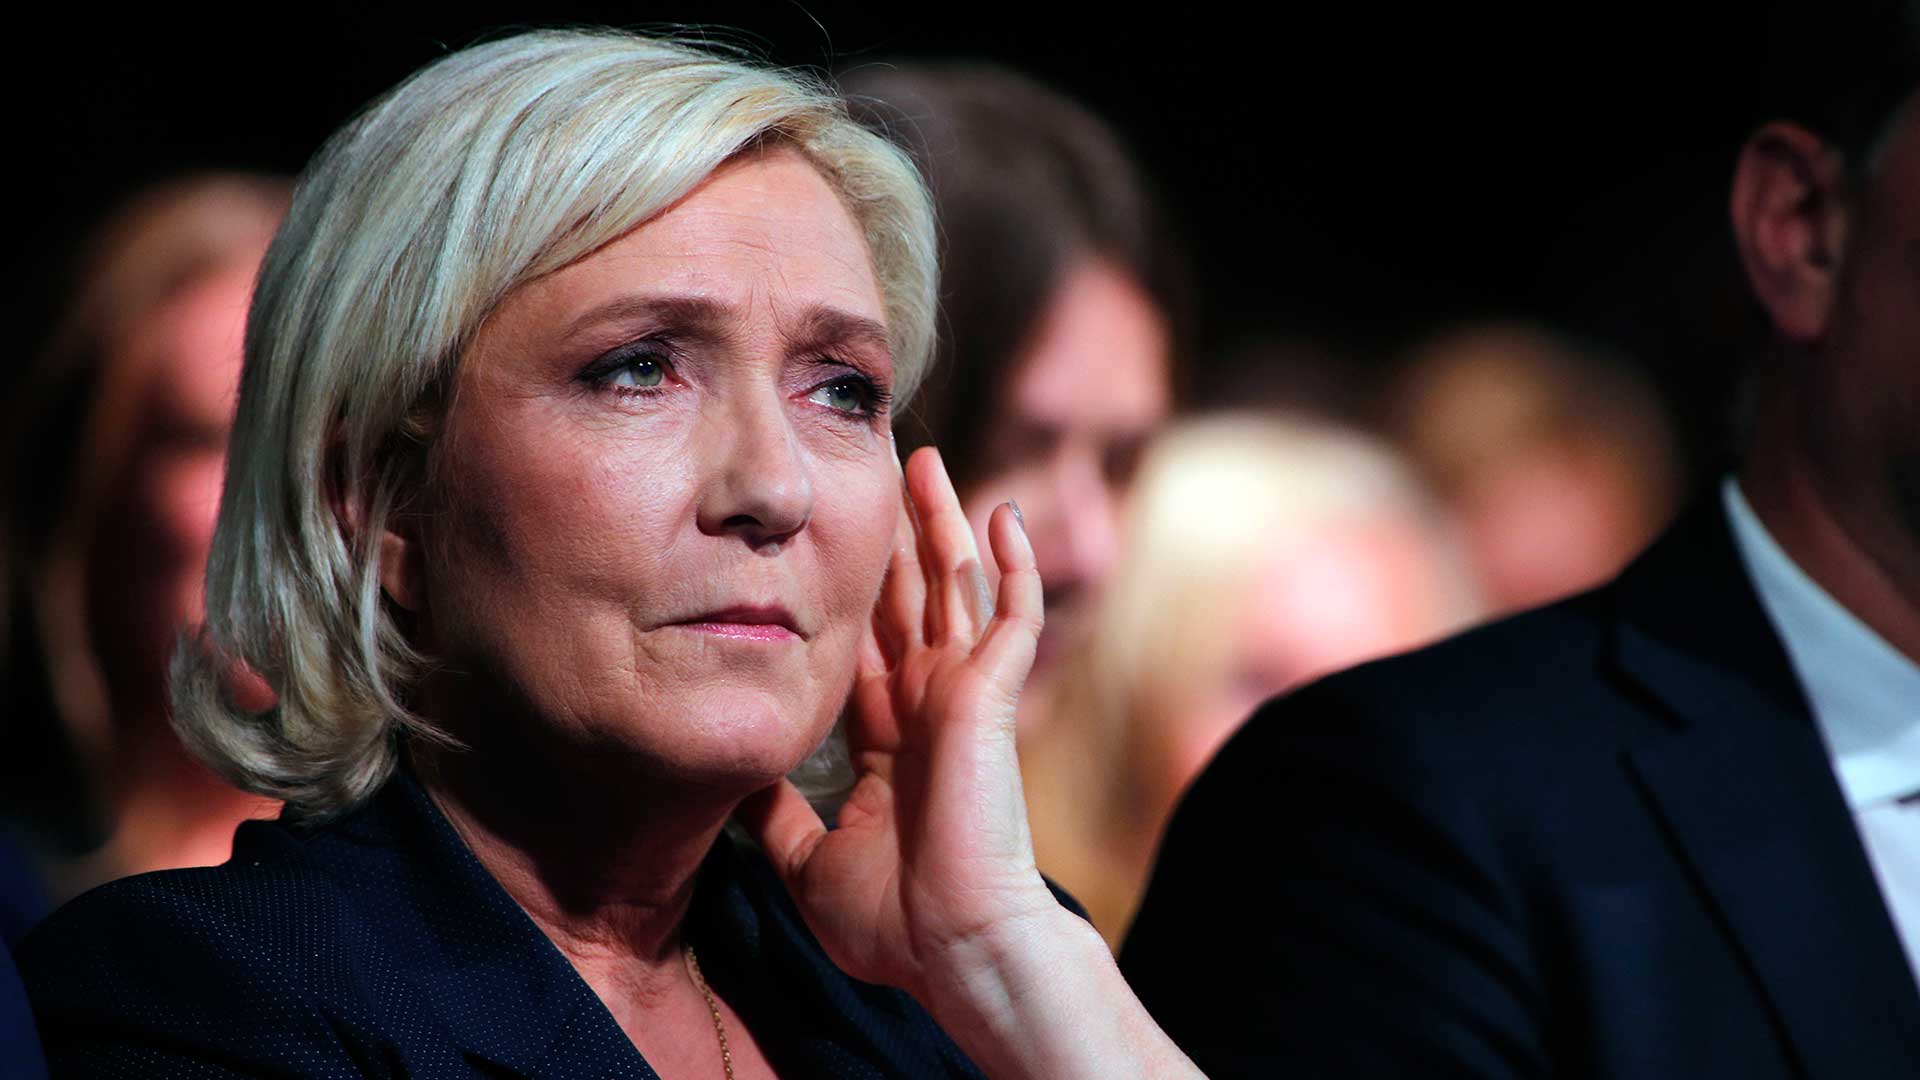 Le Pen deberá someterse a un examen psiquiátrico por publicar fotos del EI